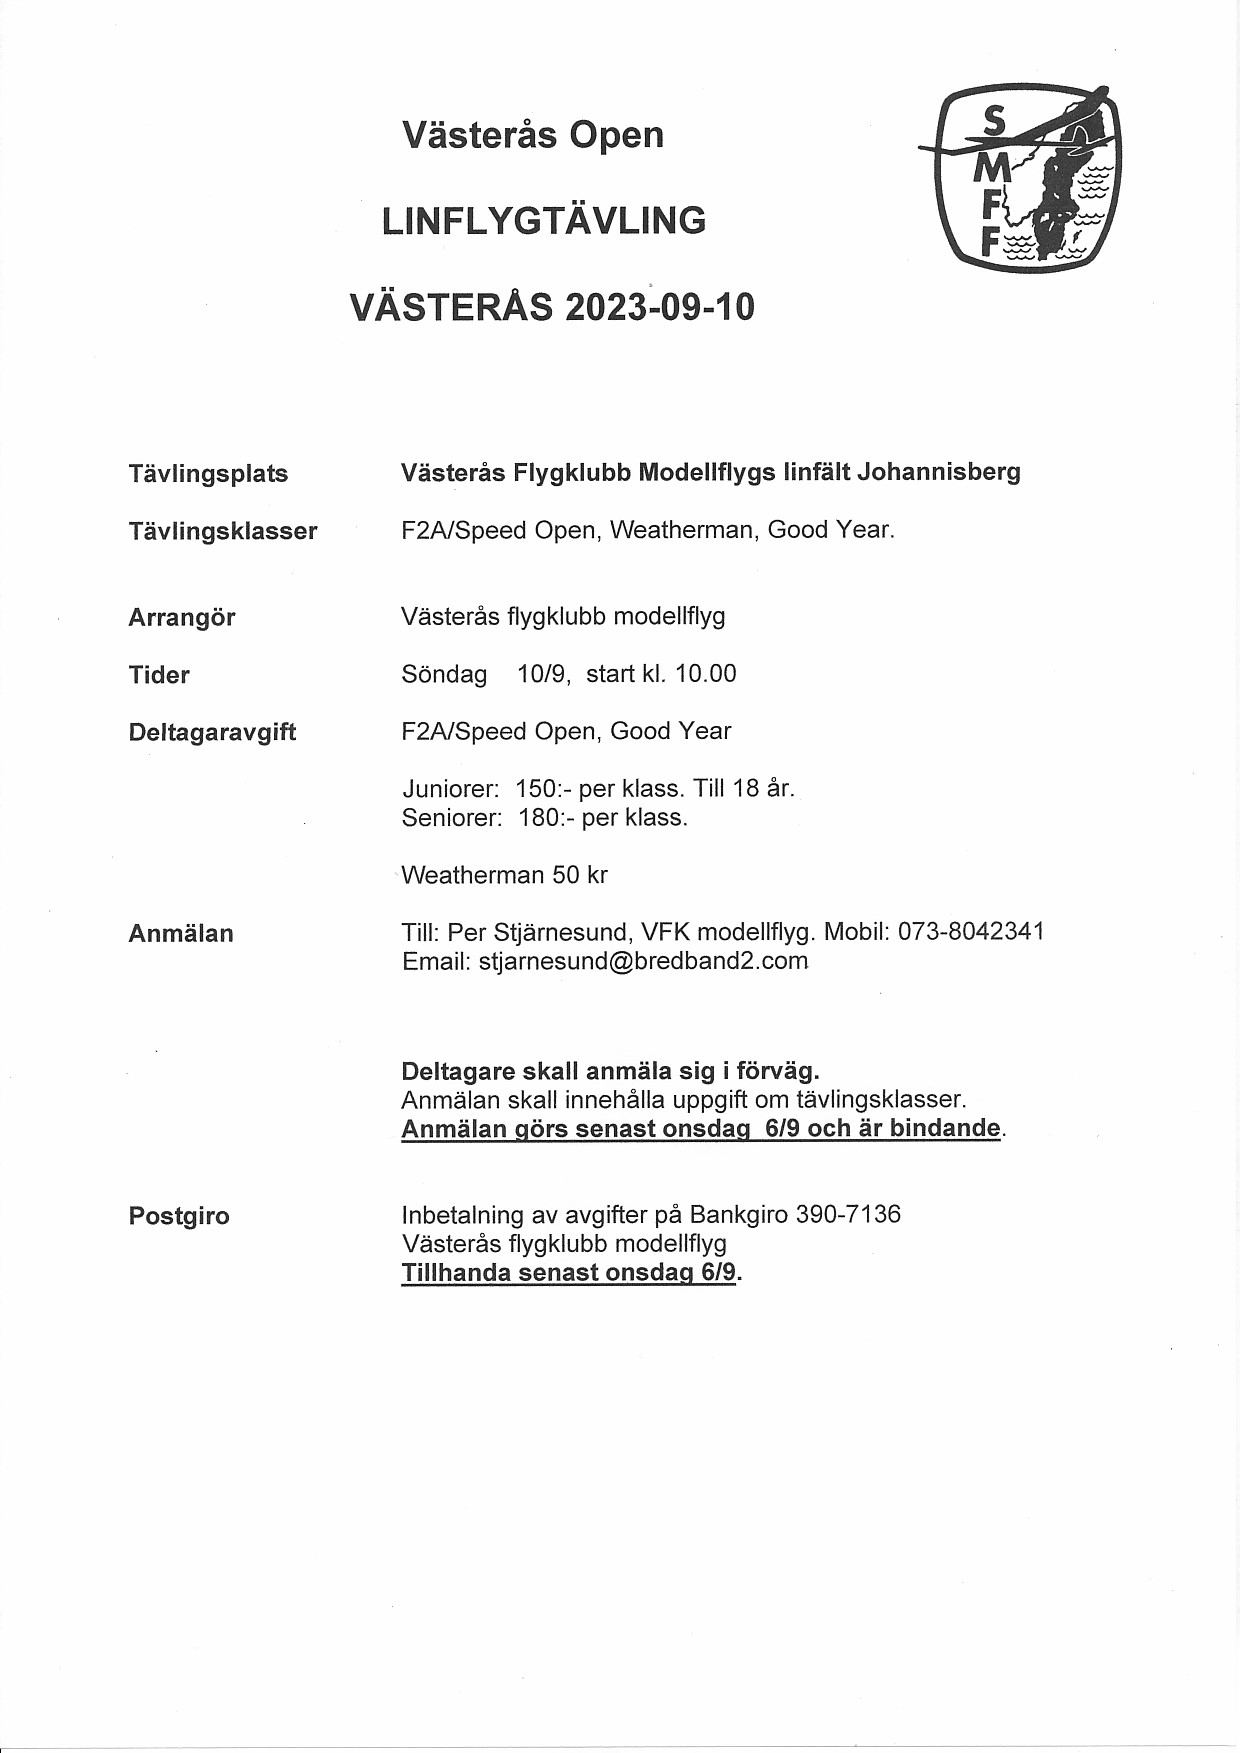 Västerås Open 2023-09-10.jpg